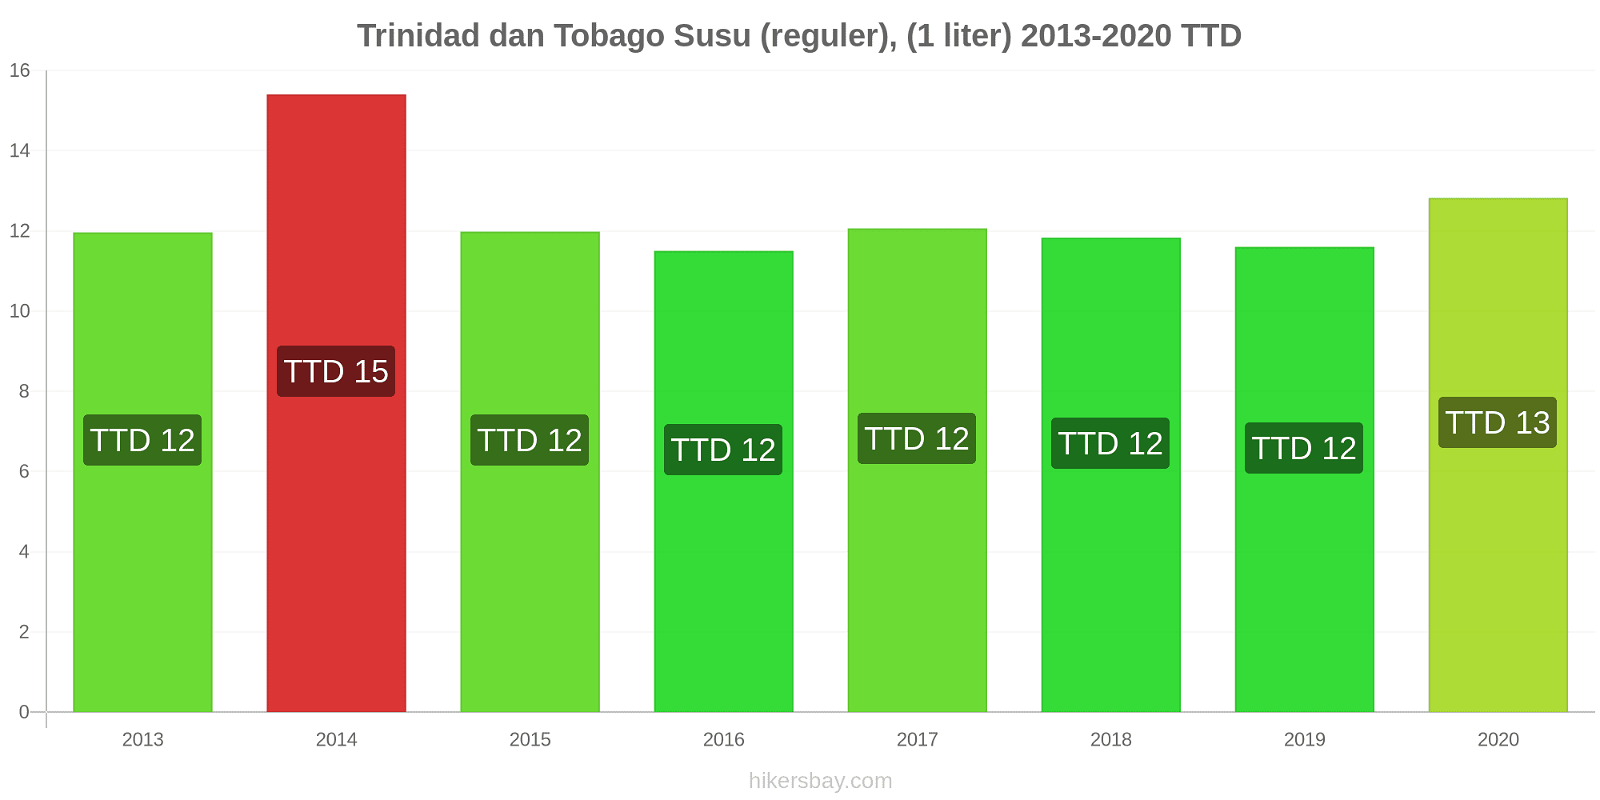 Trinidad dan Tobago perubahan harga Susu (reguler), (1 liter) hikersbay.com